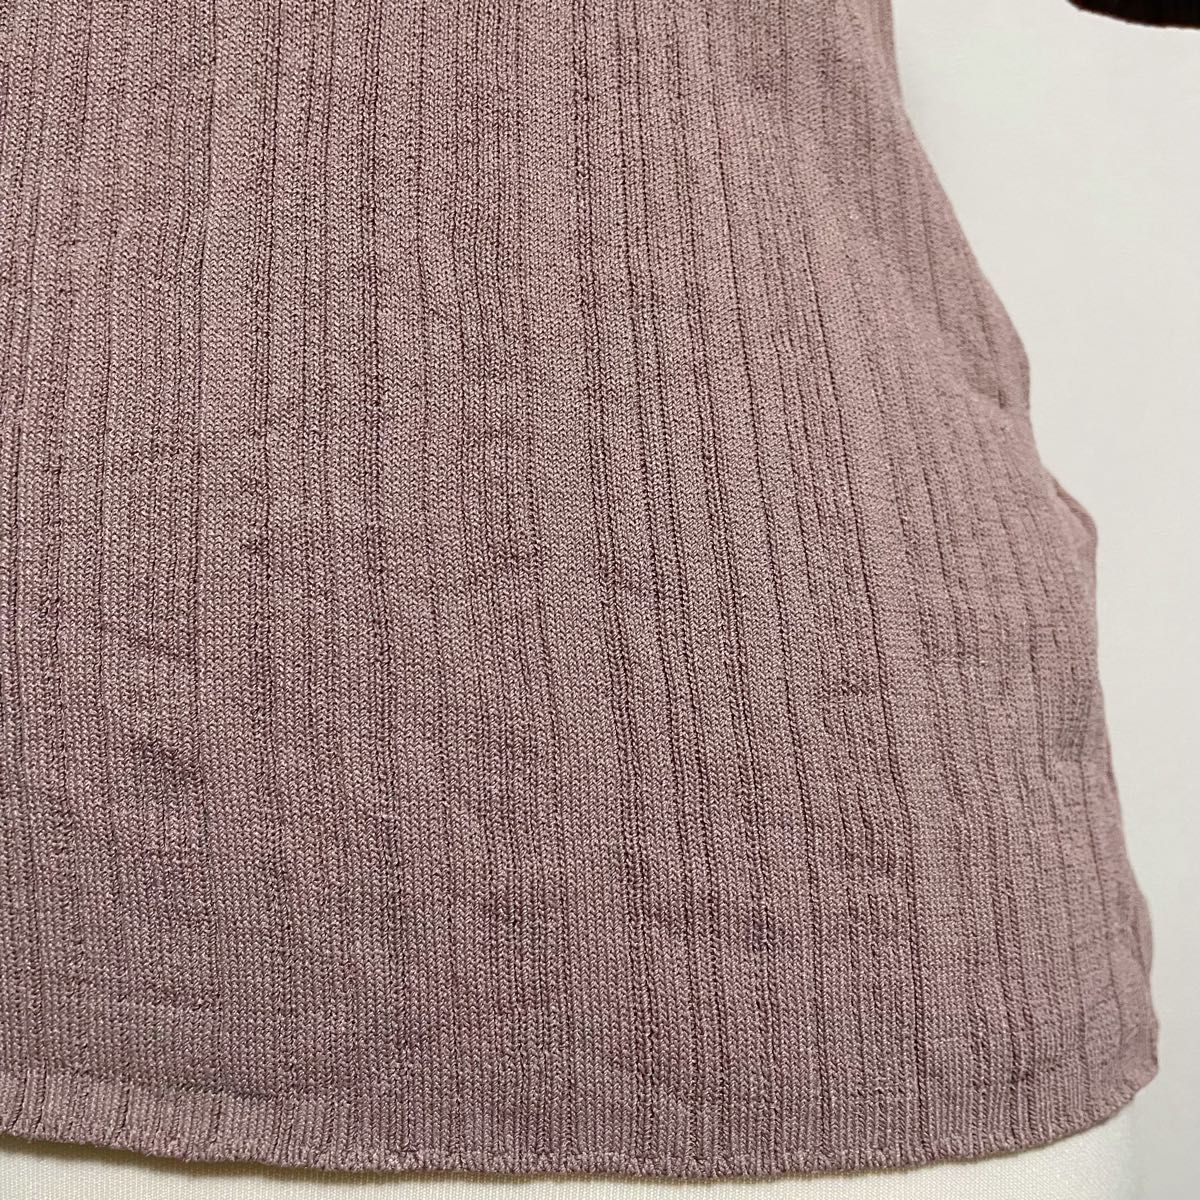 センスオブプレイス 変形リブ サマーニット 小豆色  セーター 五分袖 薄手